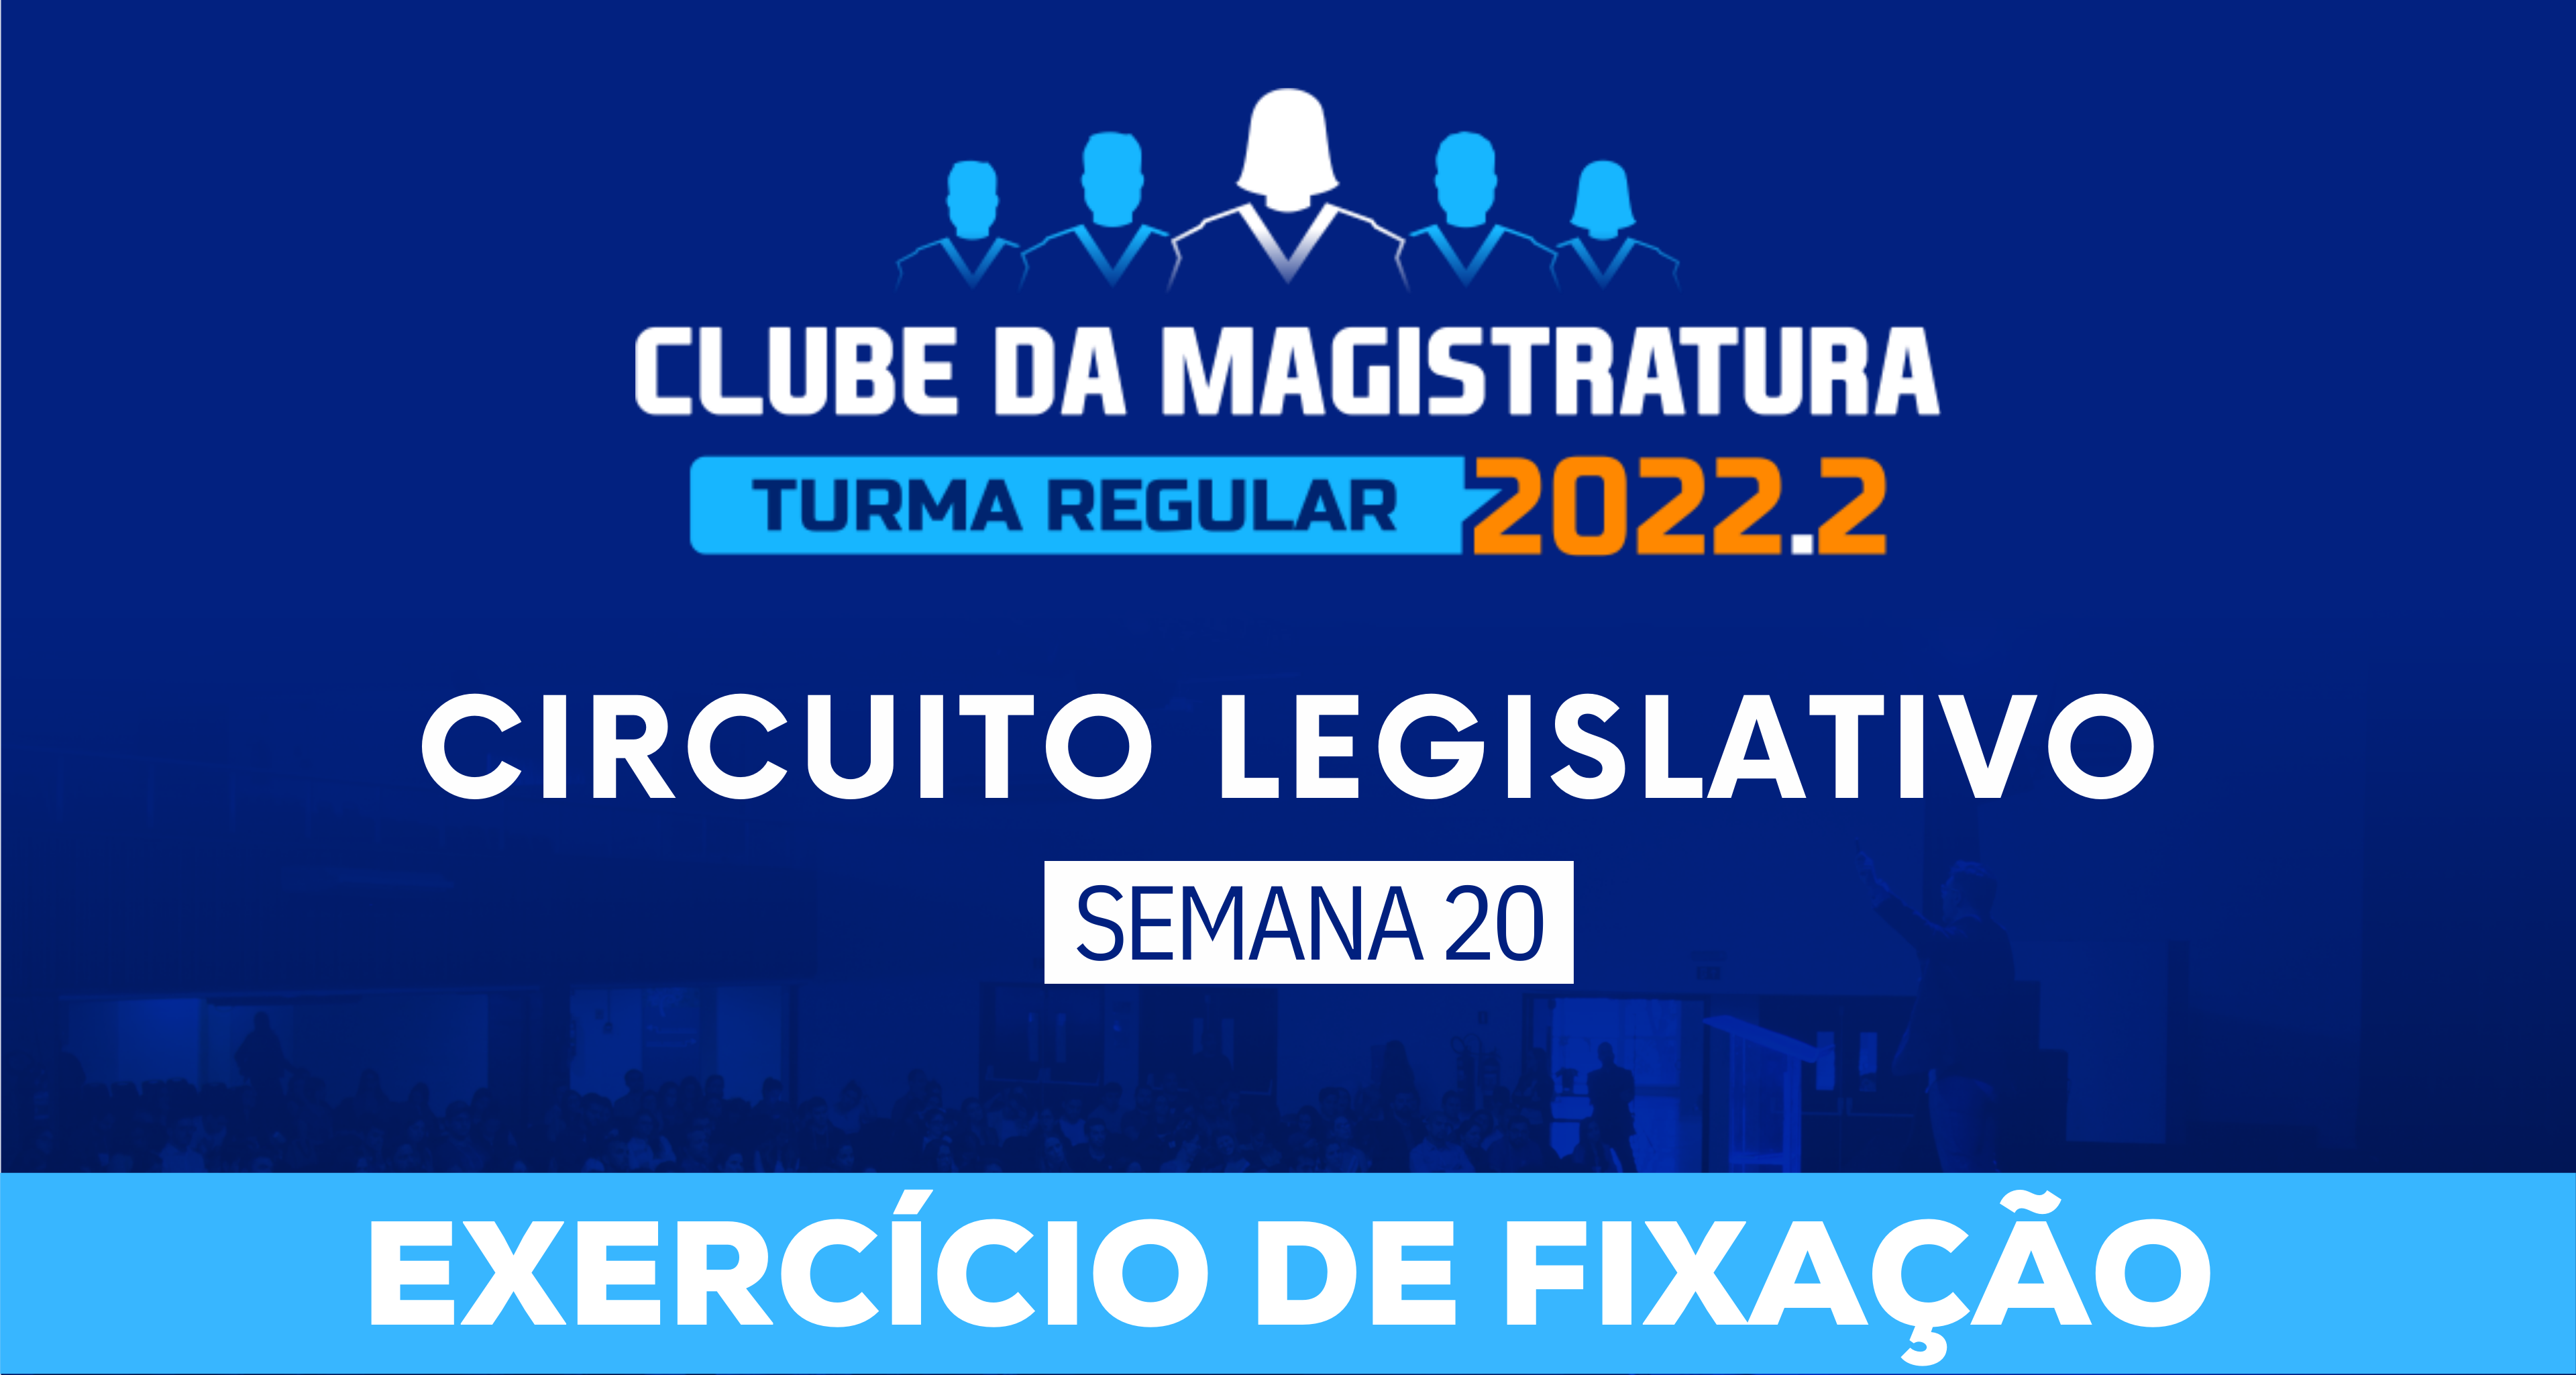 Circuito Legislativo 2022.2 (Clube da Magistratura - Semana 20)